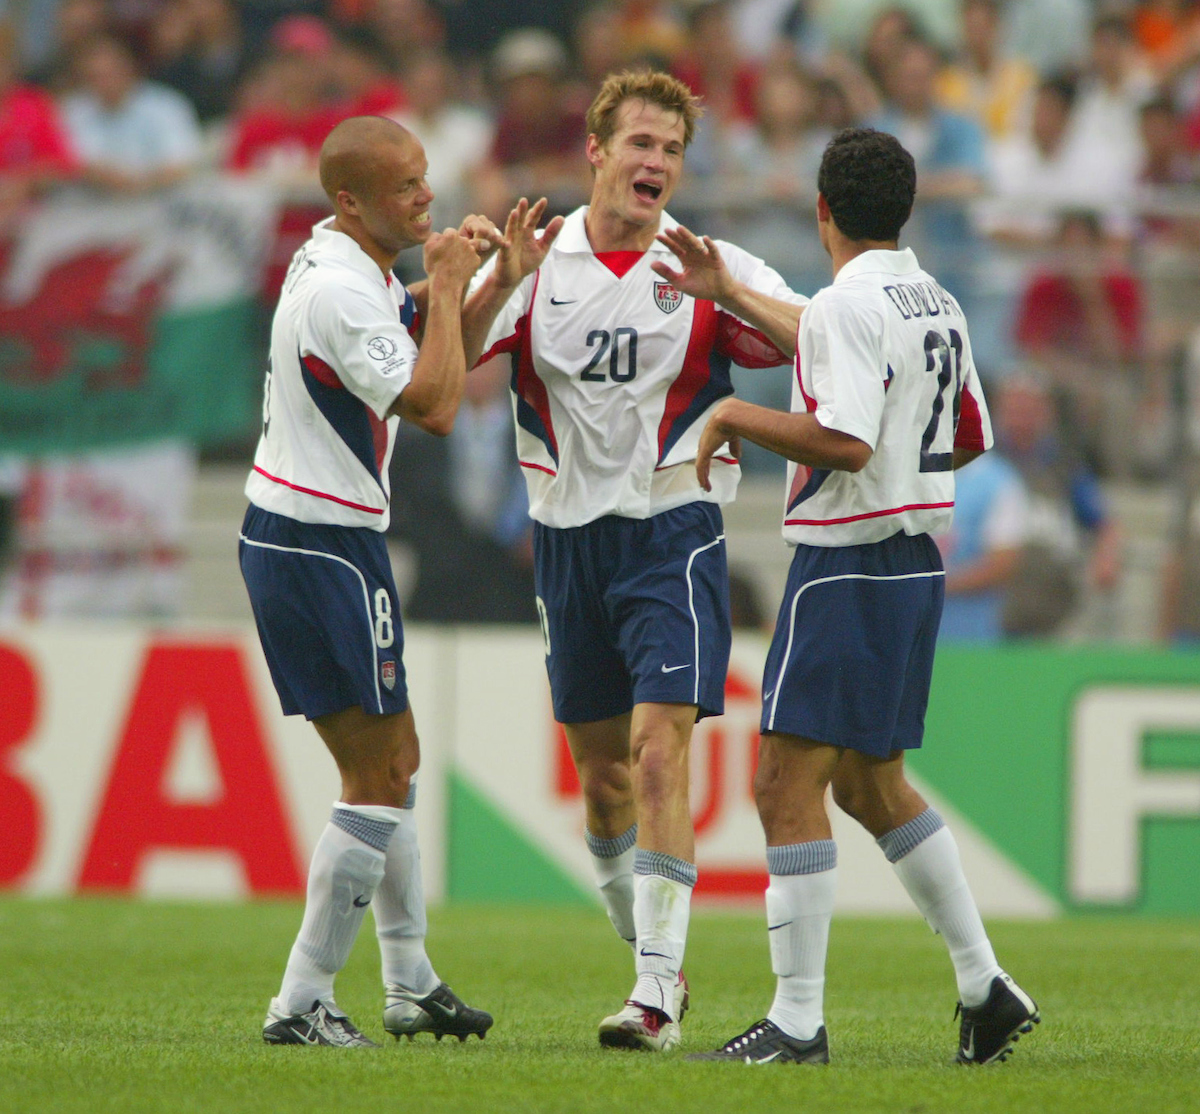 ENGLAND NATIONAL TEAM 2000 2002 HOME FOOTBALL SHIRT JERSEY SIZE XL 